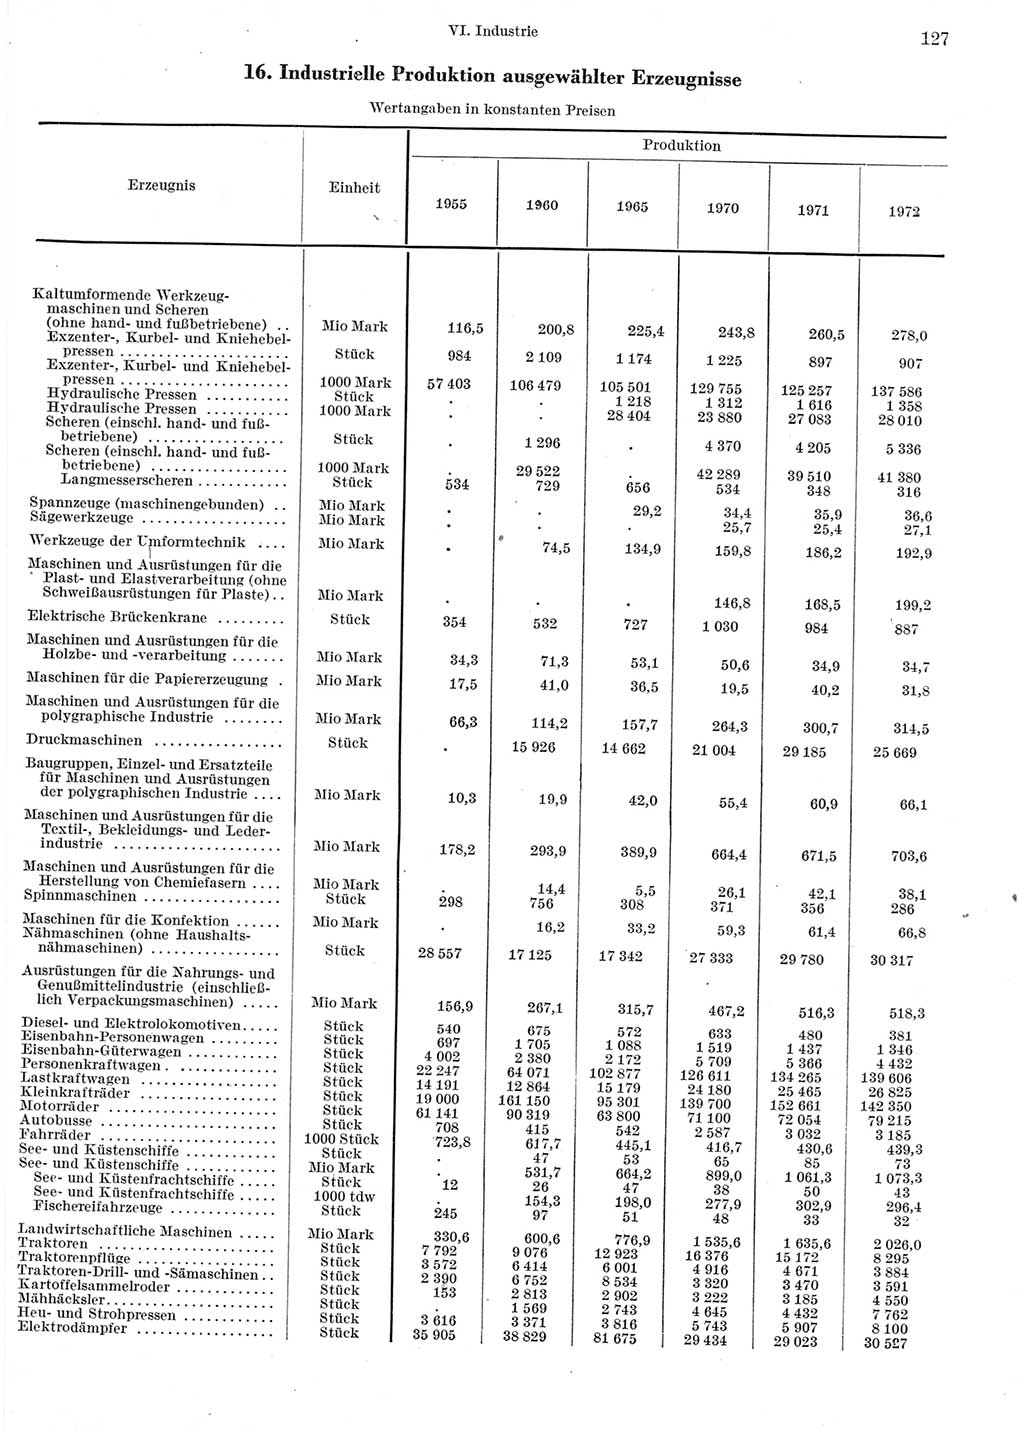 Statistisches Jahrbuch der Deutschen Demokratischen Republik (DDR) 1973, Seite 127 (Stat. Jb. DDR 1973, S. 127)